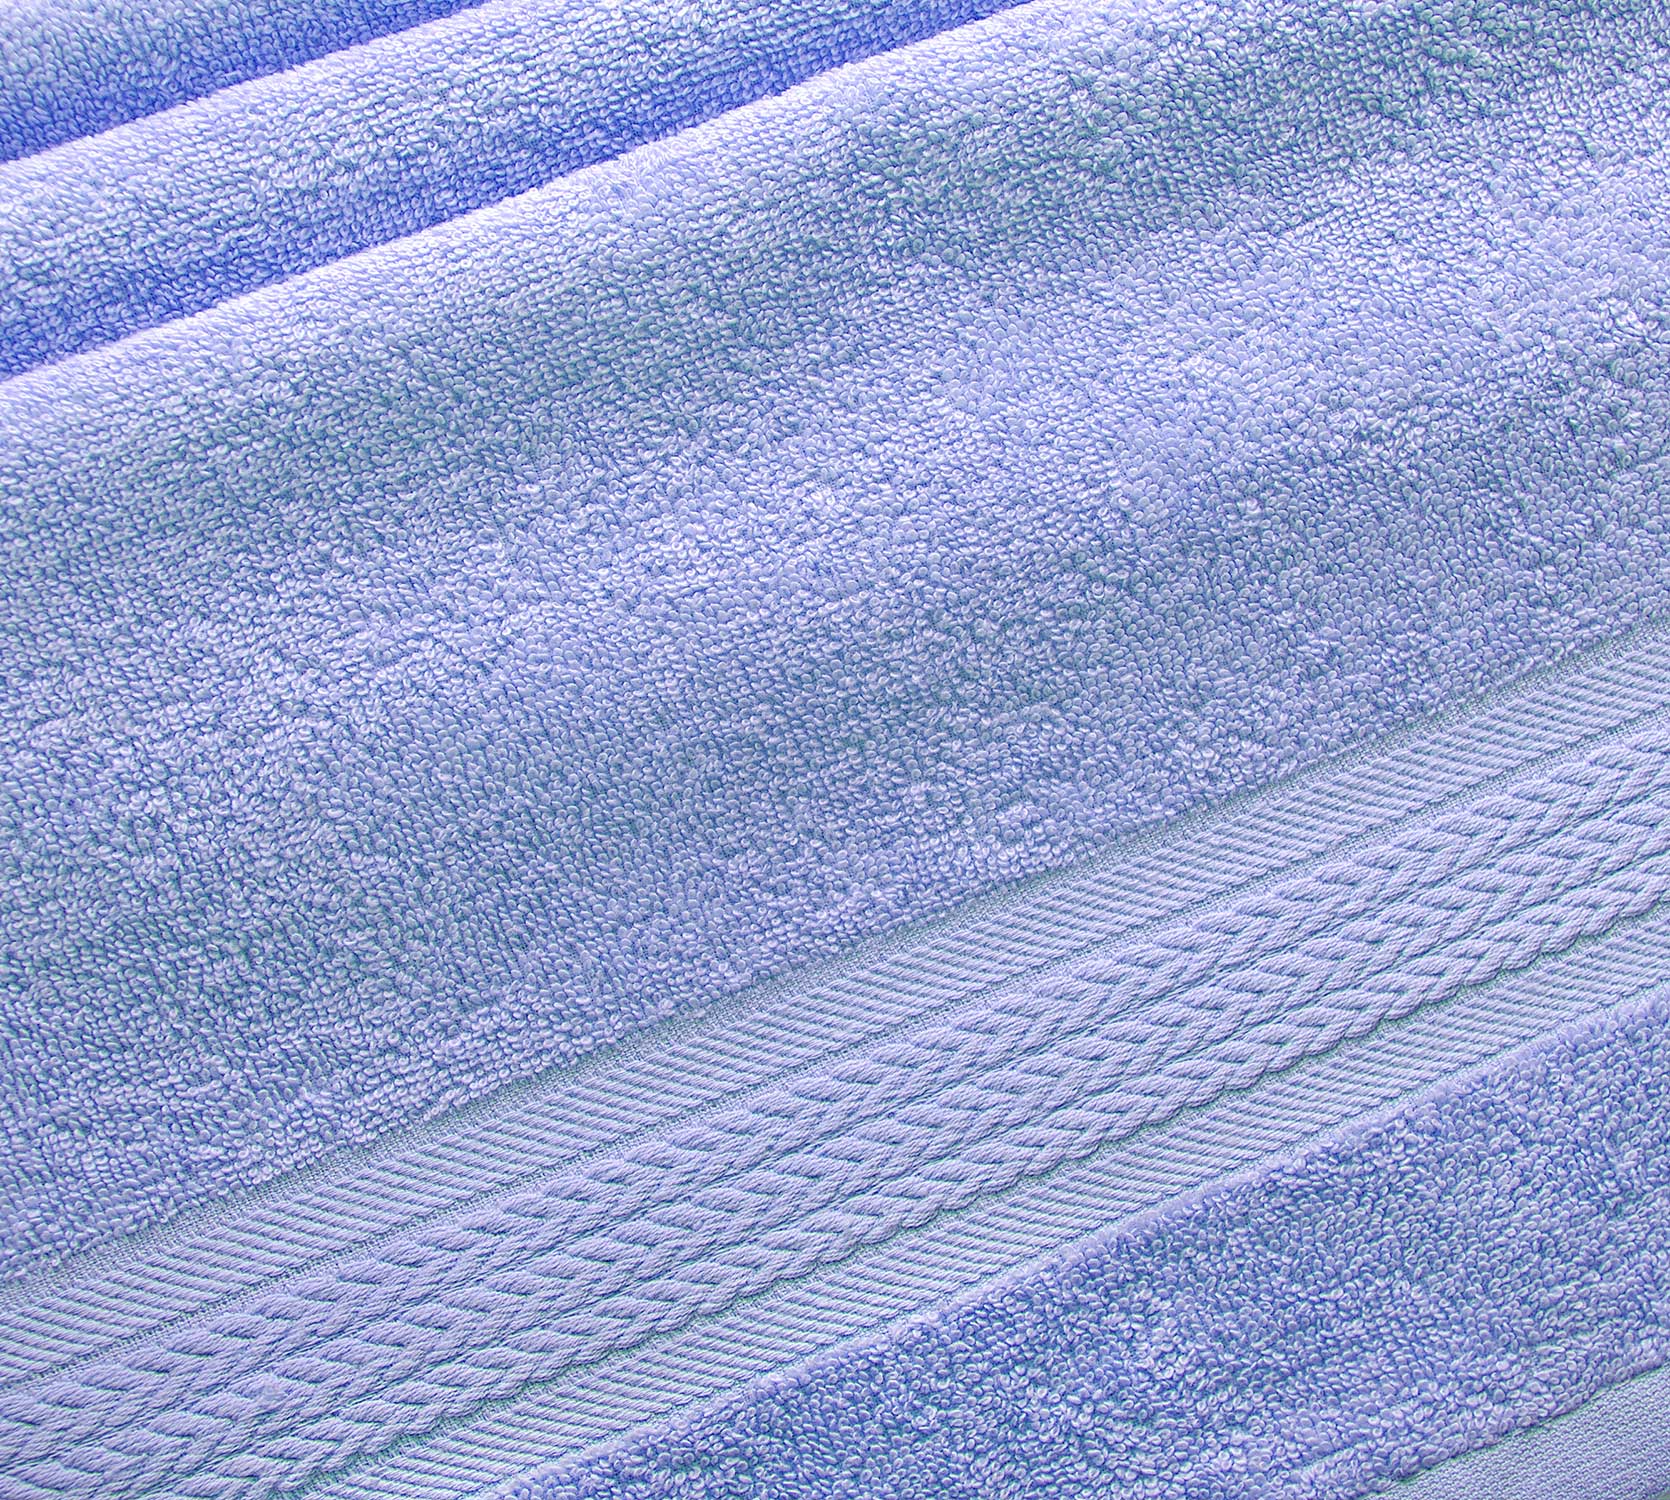 Постельное белье Махровое полотенце для рук и лица 50х90, Утро аметист  фото